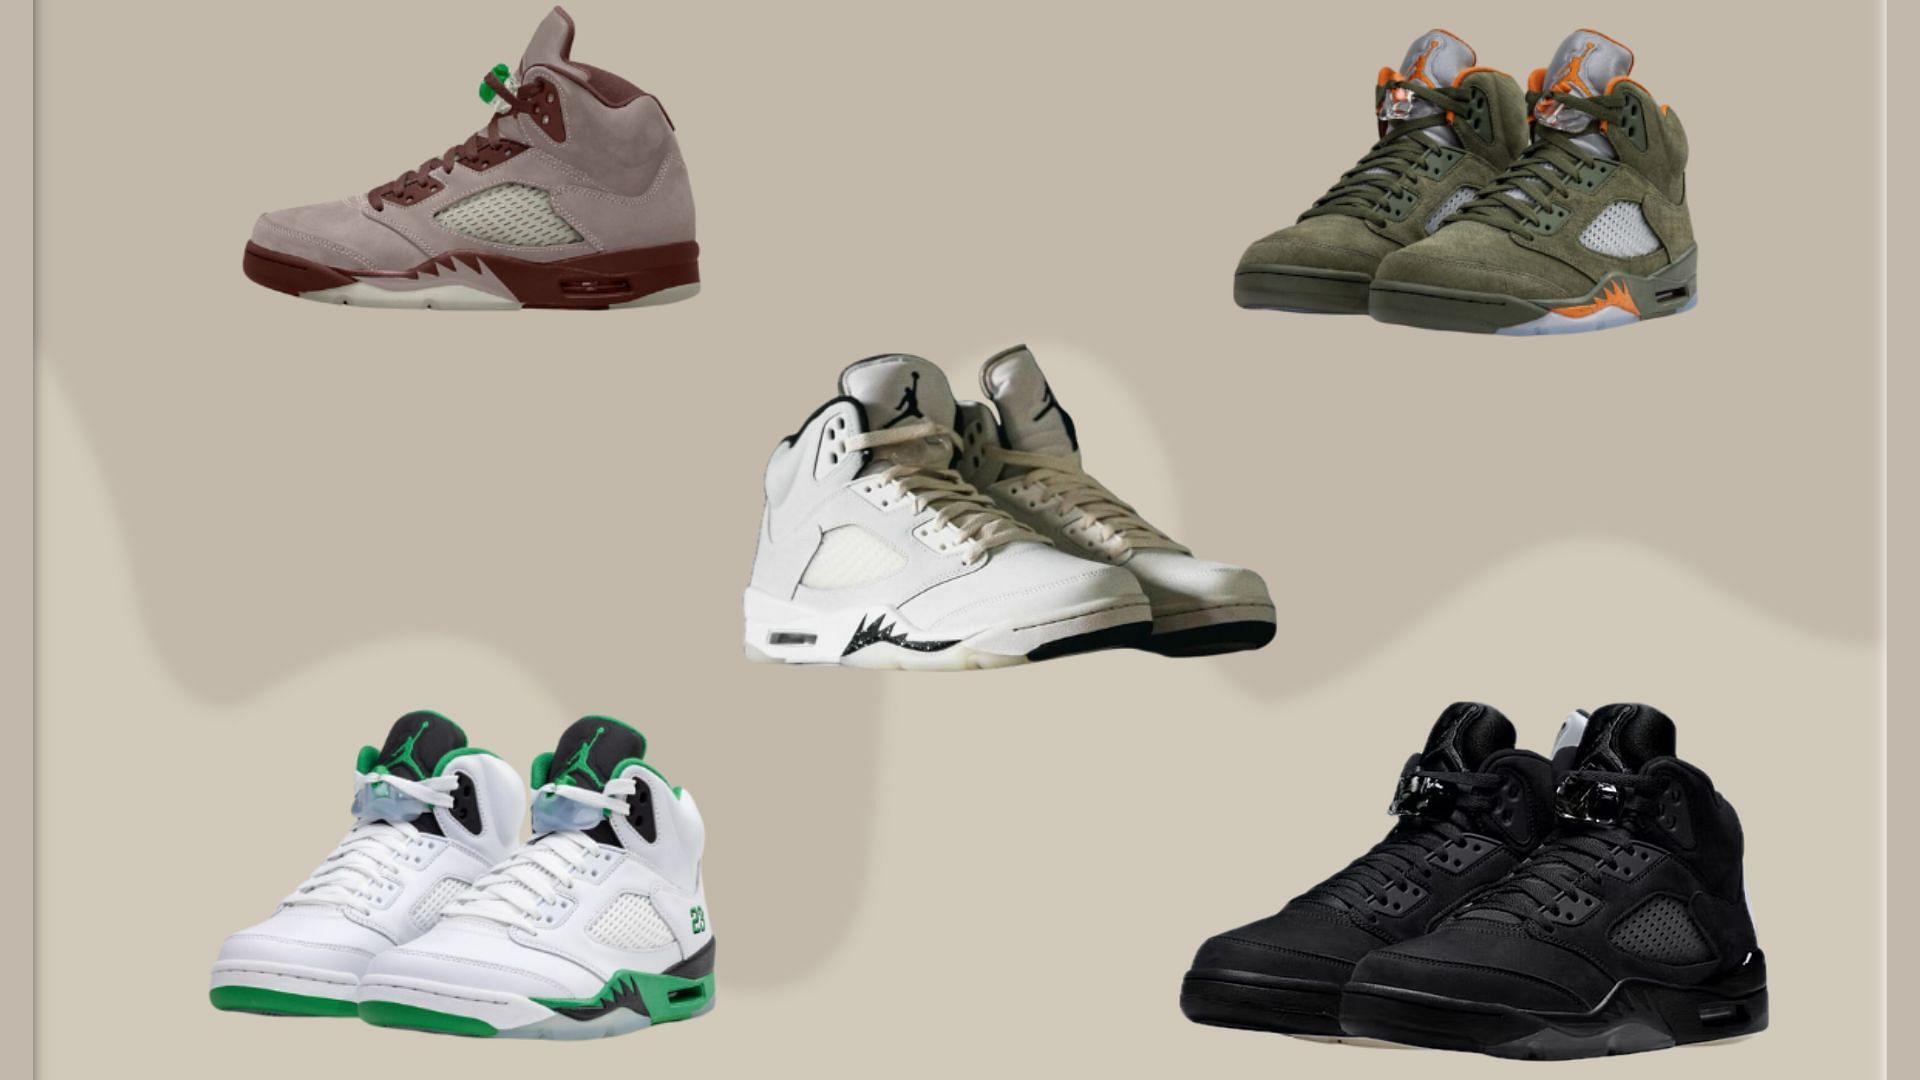 Air Jordan 5 sneaker colorways anticipated to arrive this year (Image via Sportskeeda)